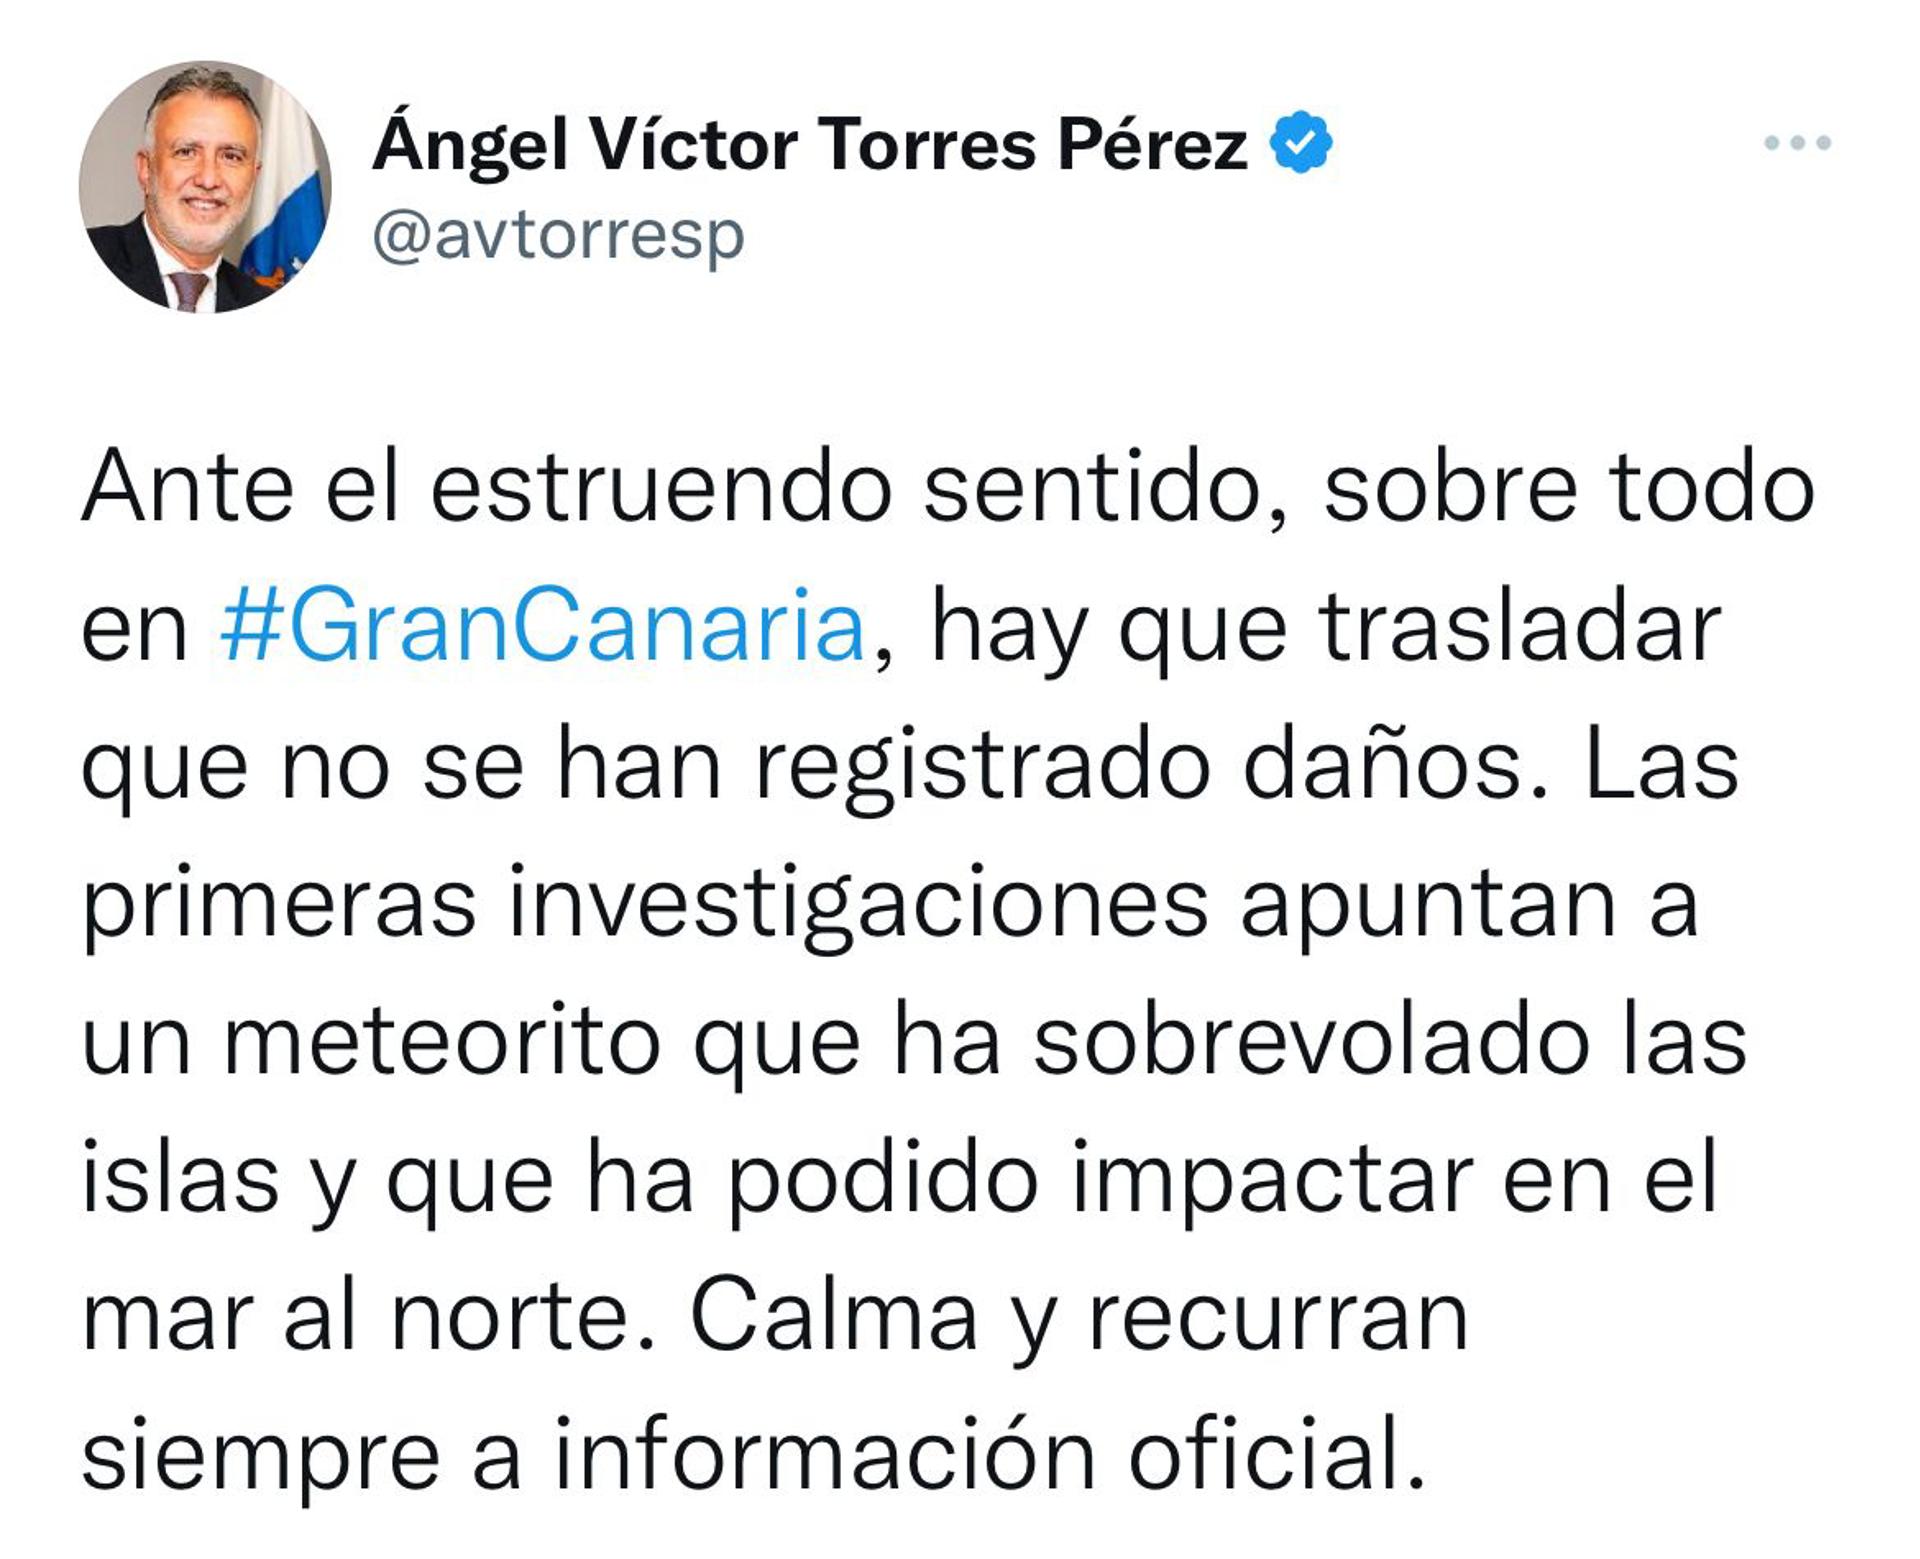 Imagen del tuit del presidente del Gobierno canario sobre el meteorito que habría impactado este miércoles en Gran Canaria.